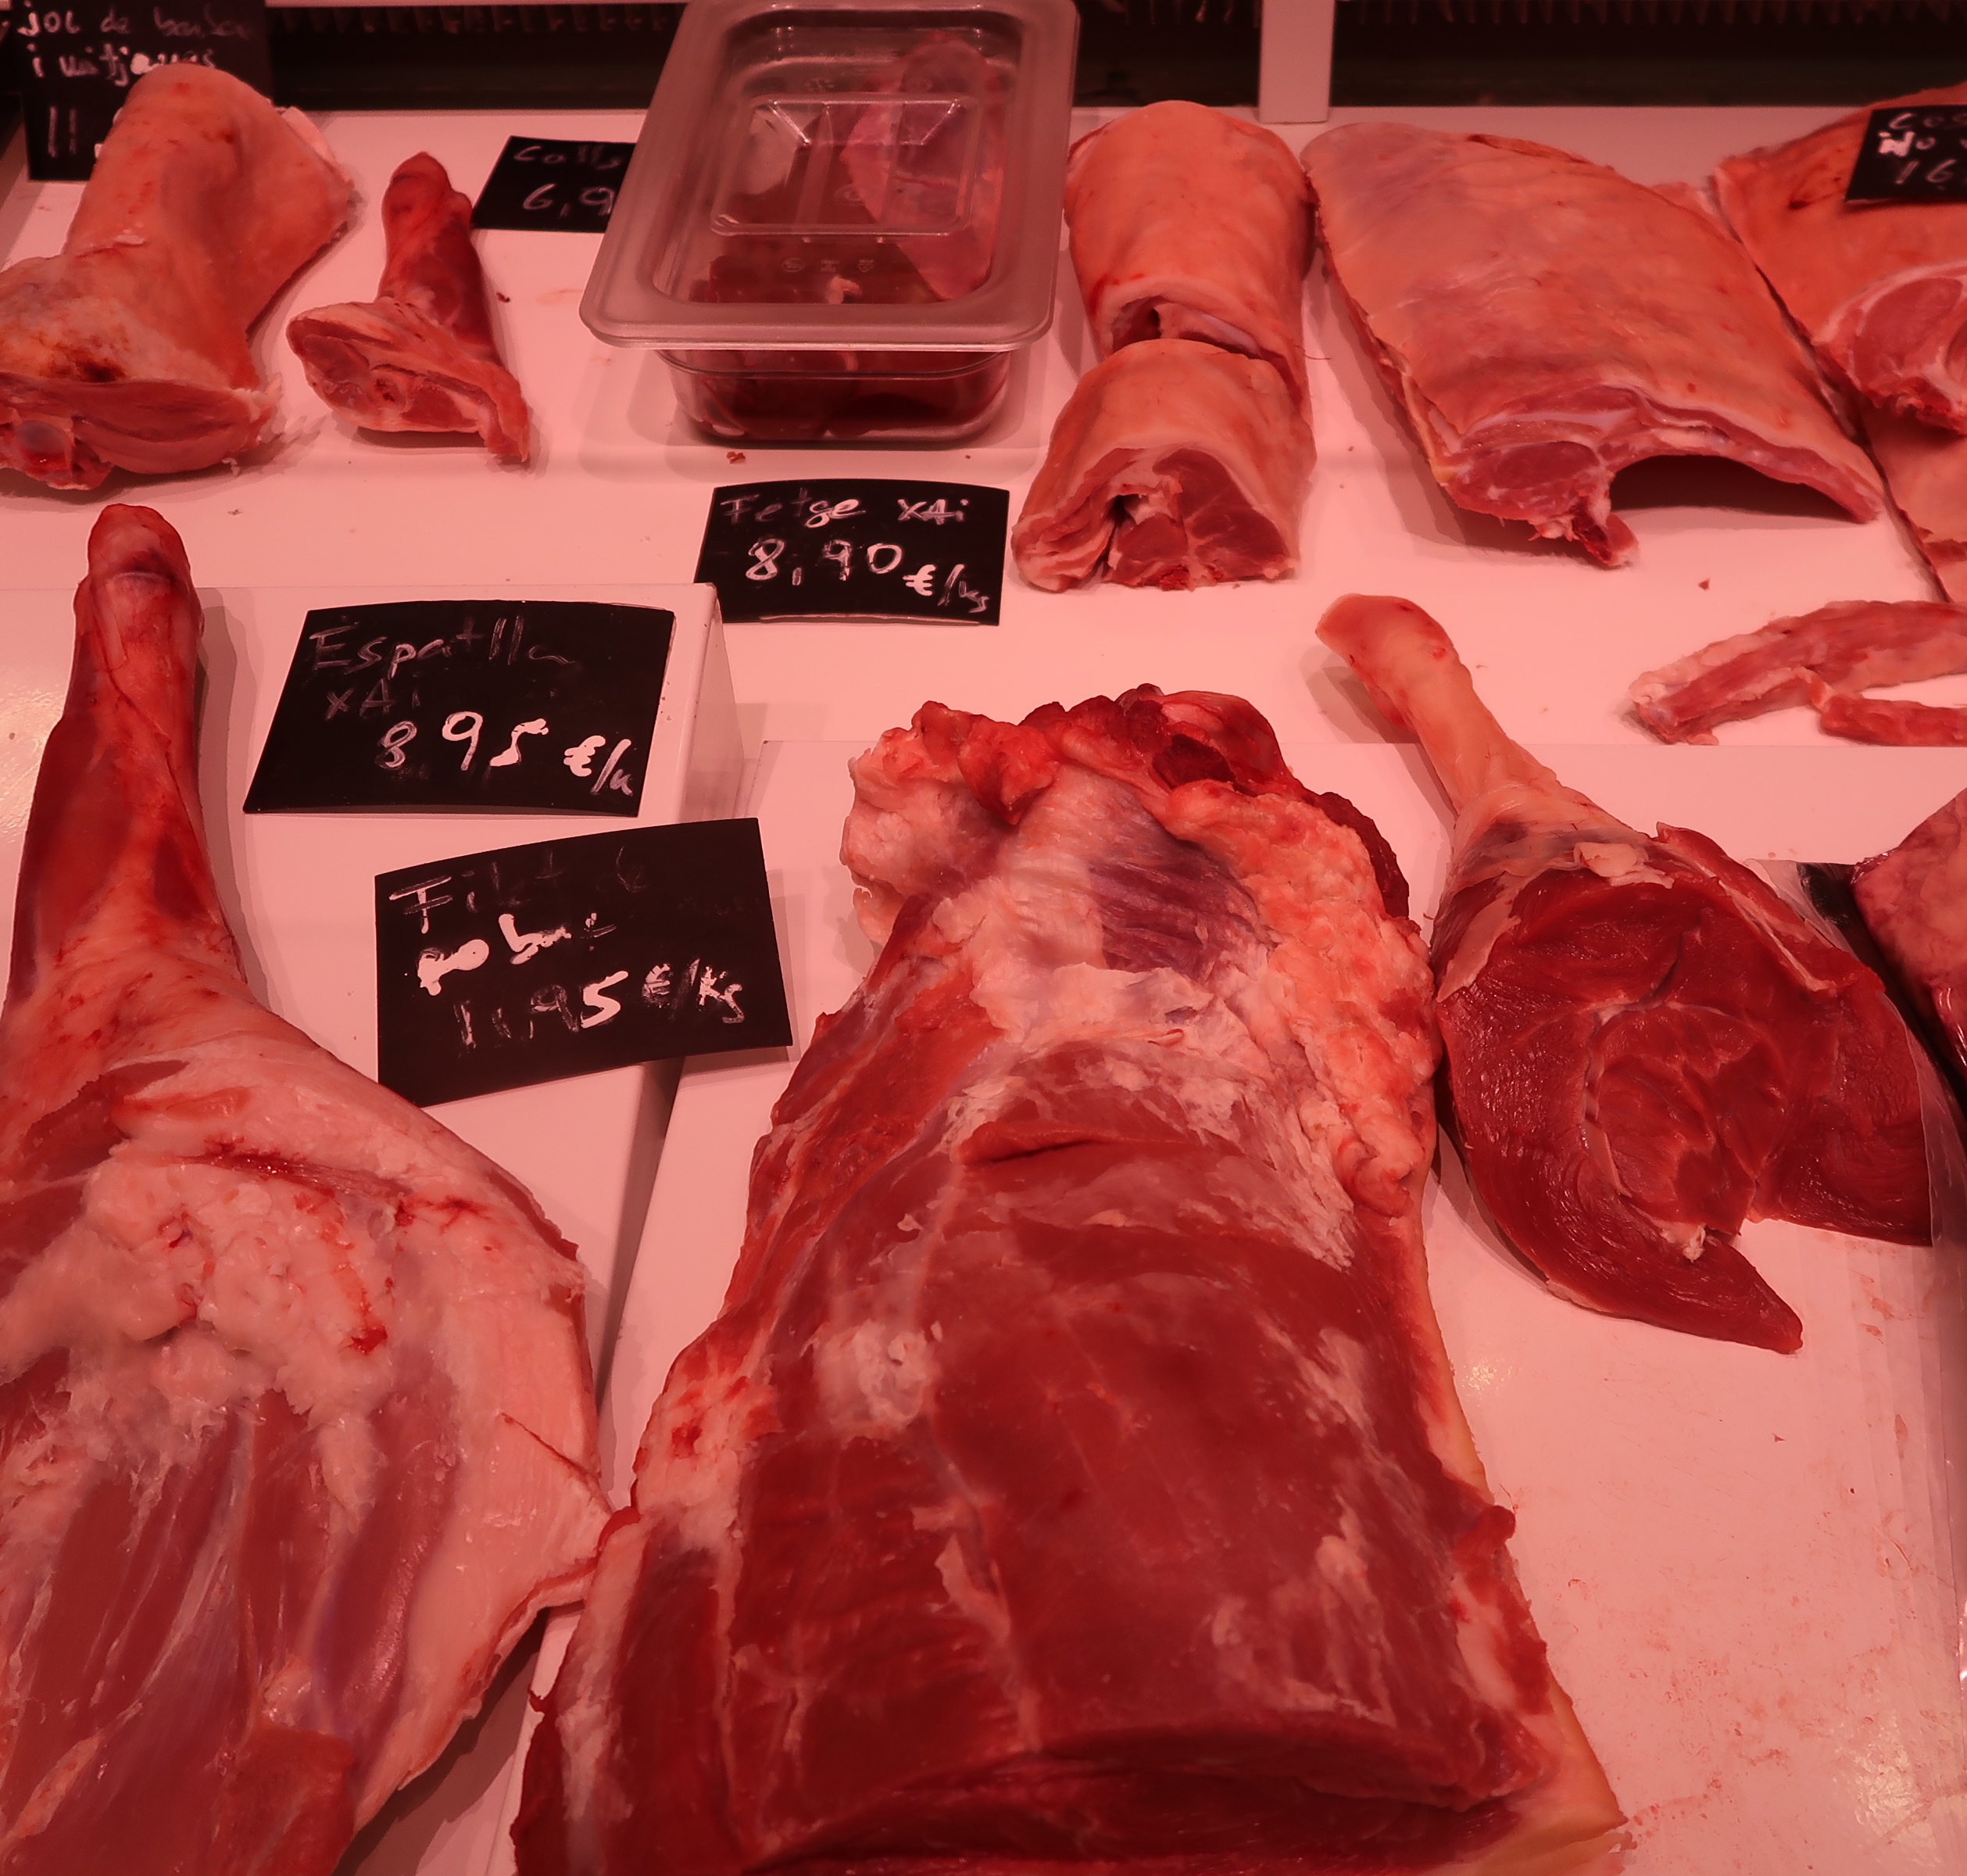 Selection of meats at Manel i Elisabet, San Antonio market, Barcelona